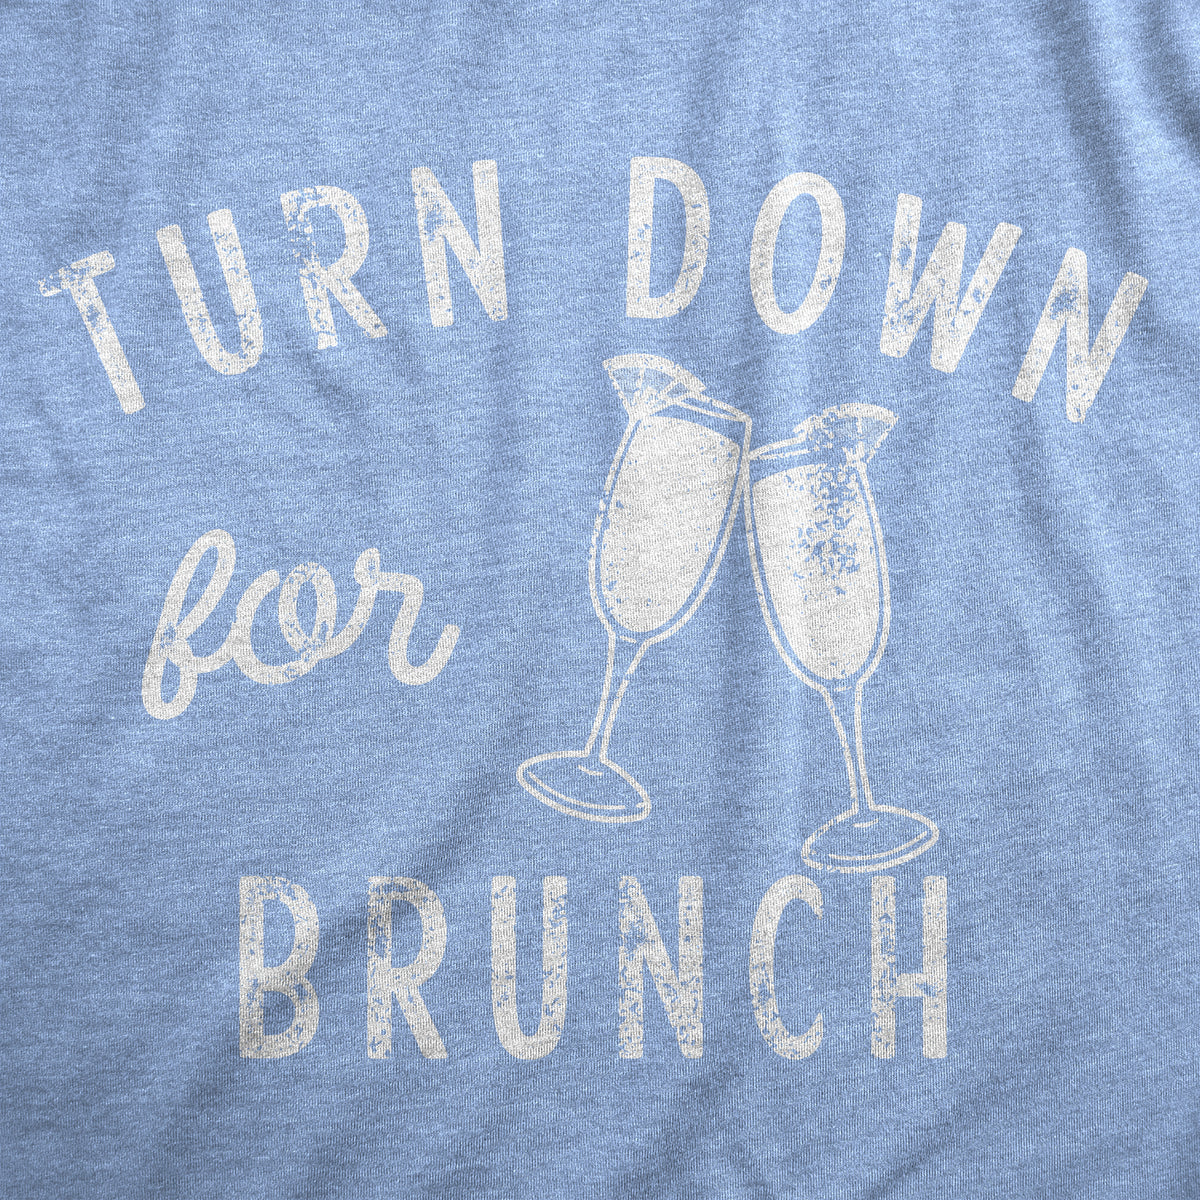 Turn Down For Brunch Men&#39;s T Shirt